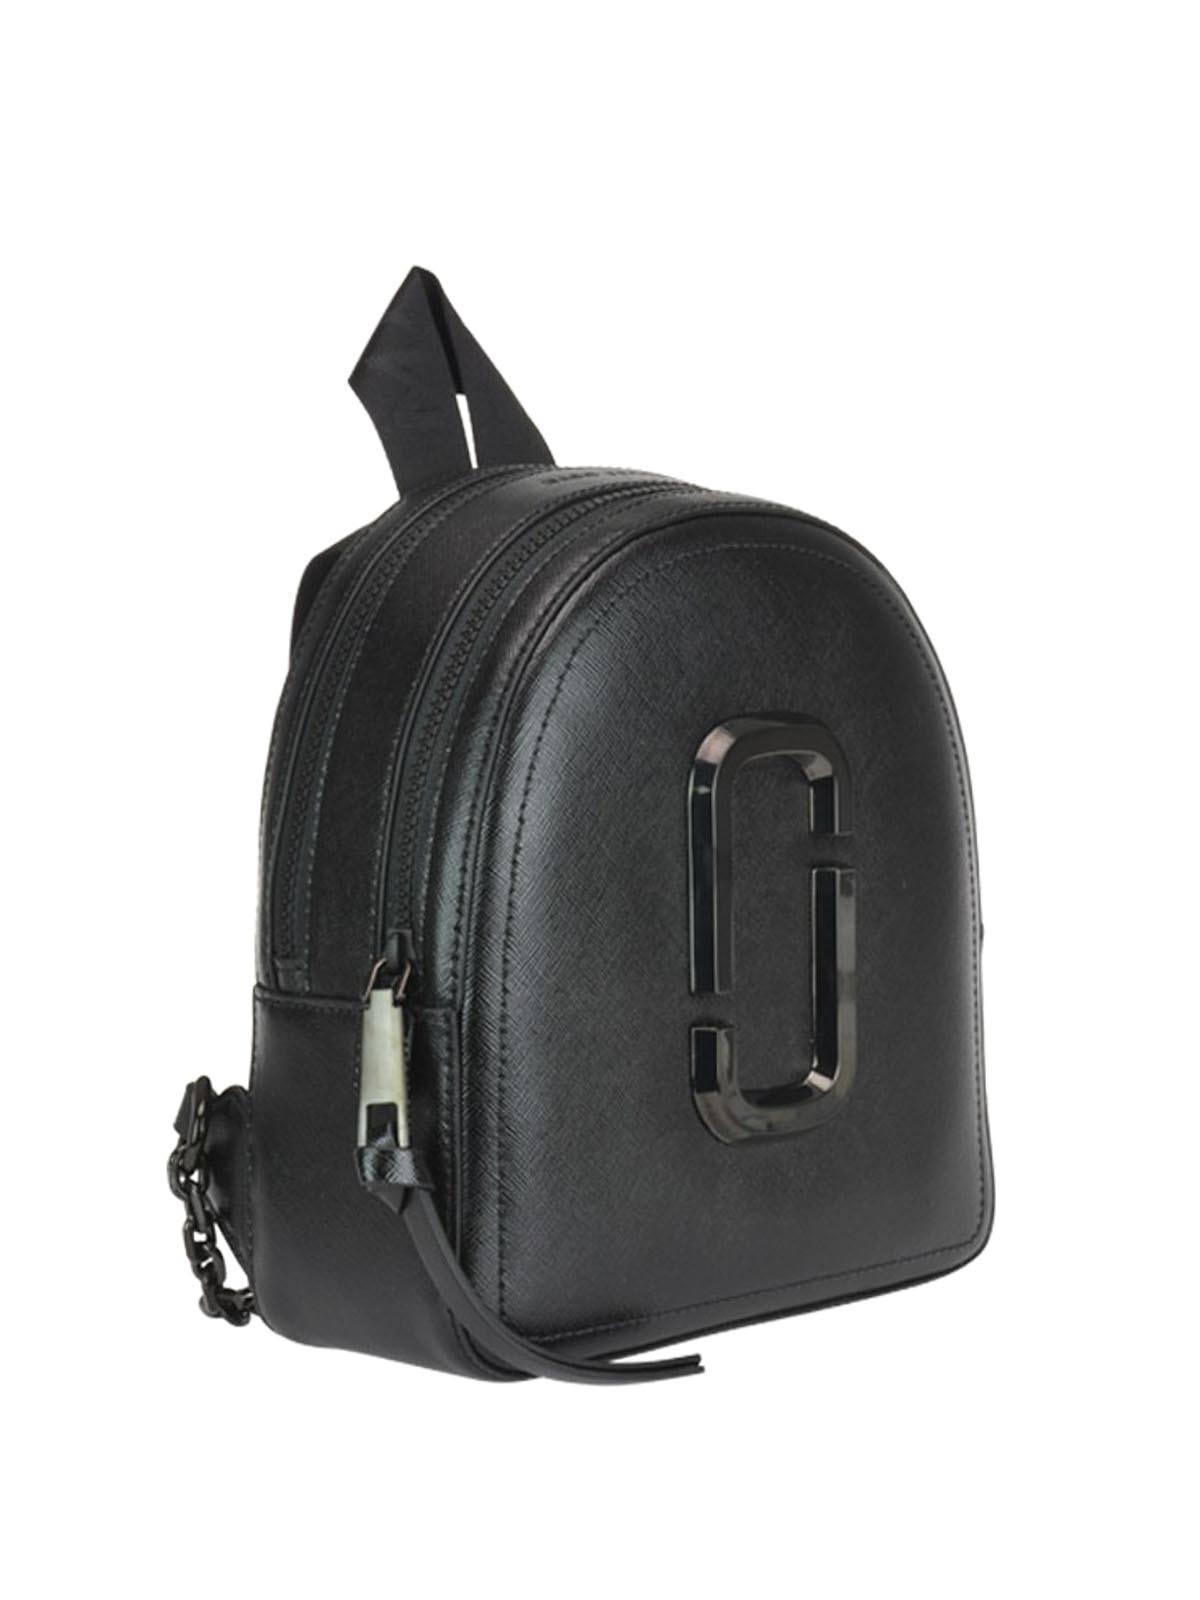 Backpacks Marc Jacobs - Pack Shot DTM black backpack - M0014988001